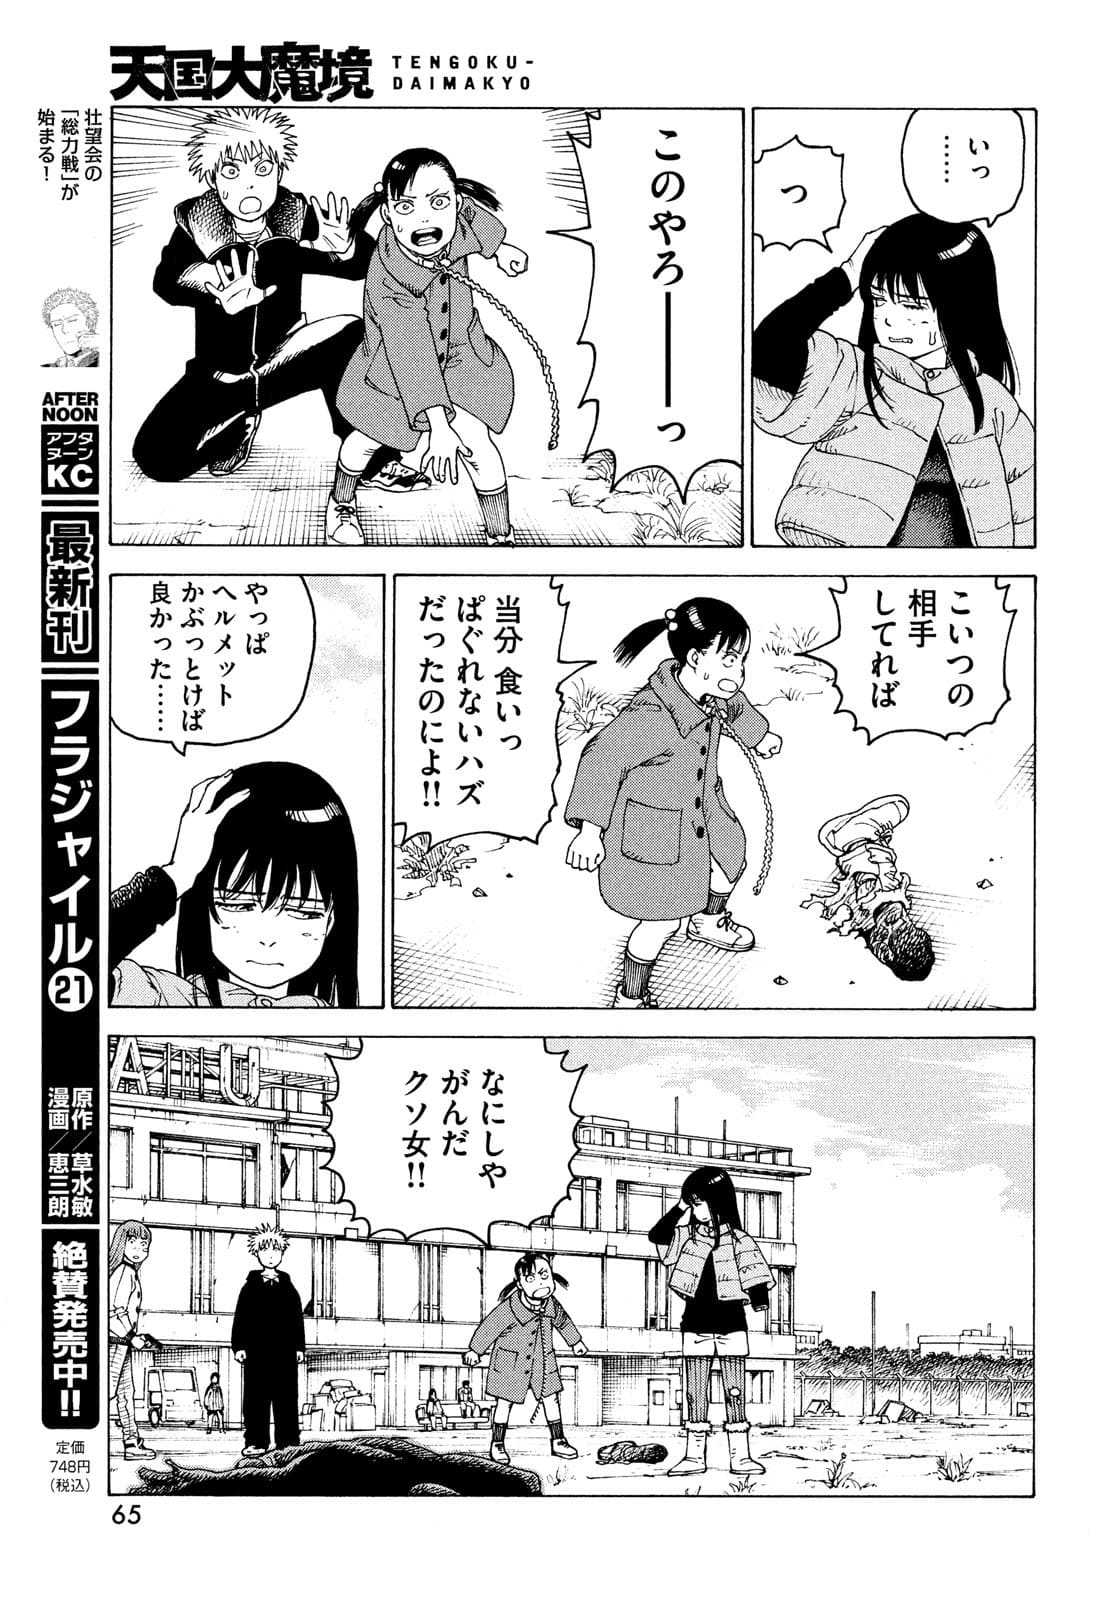 Read Tengoku Daimakyou Chapter 35 on Mangakakalot